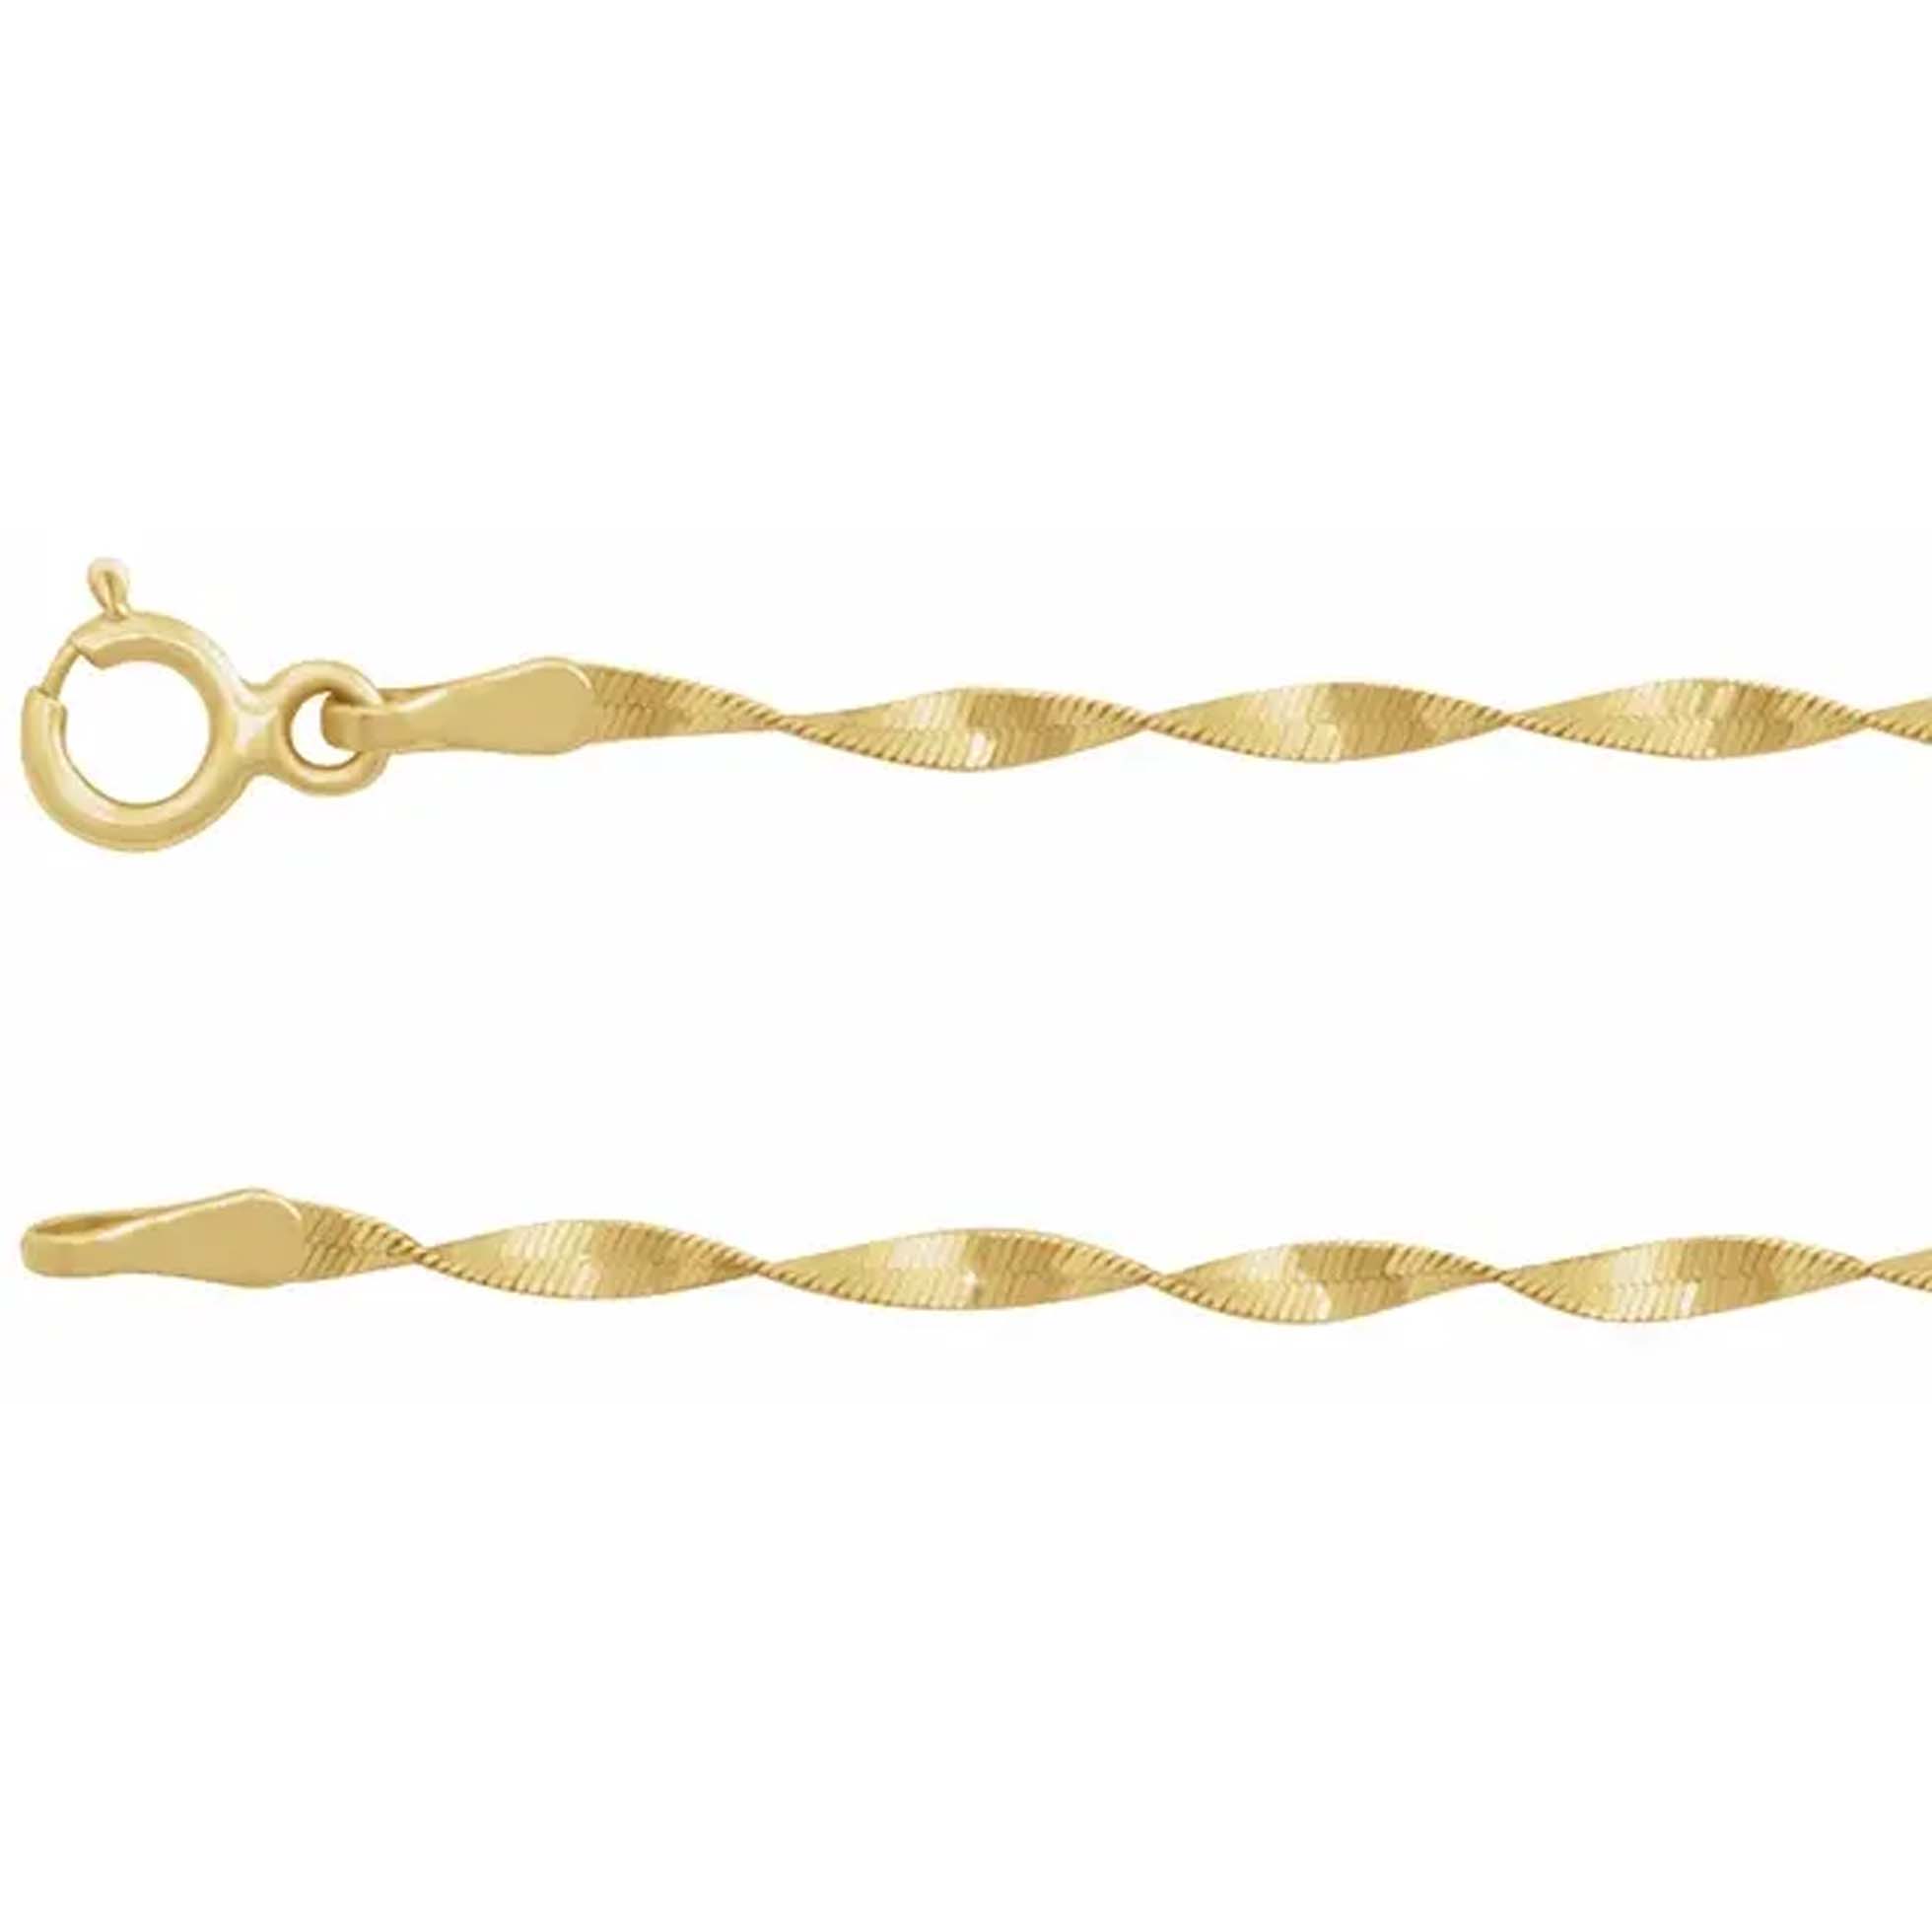 Mara 14K Yellow Gold Twisted Herringbone Bracelet